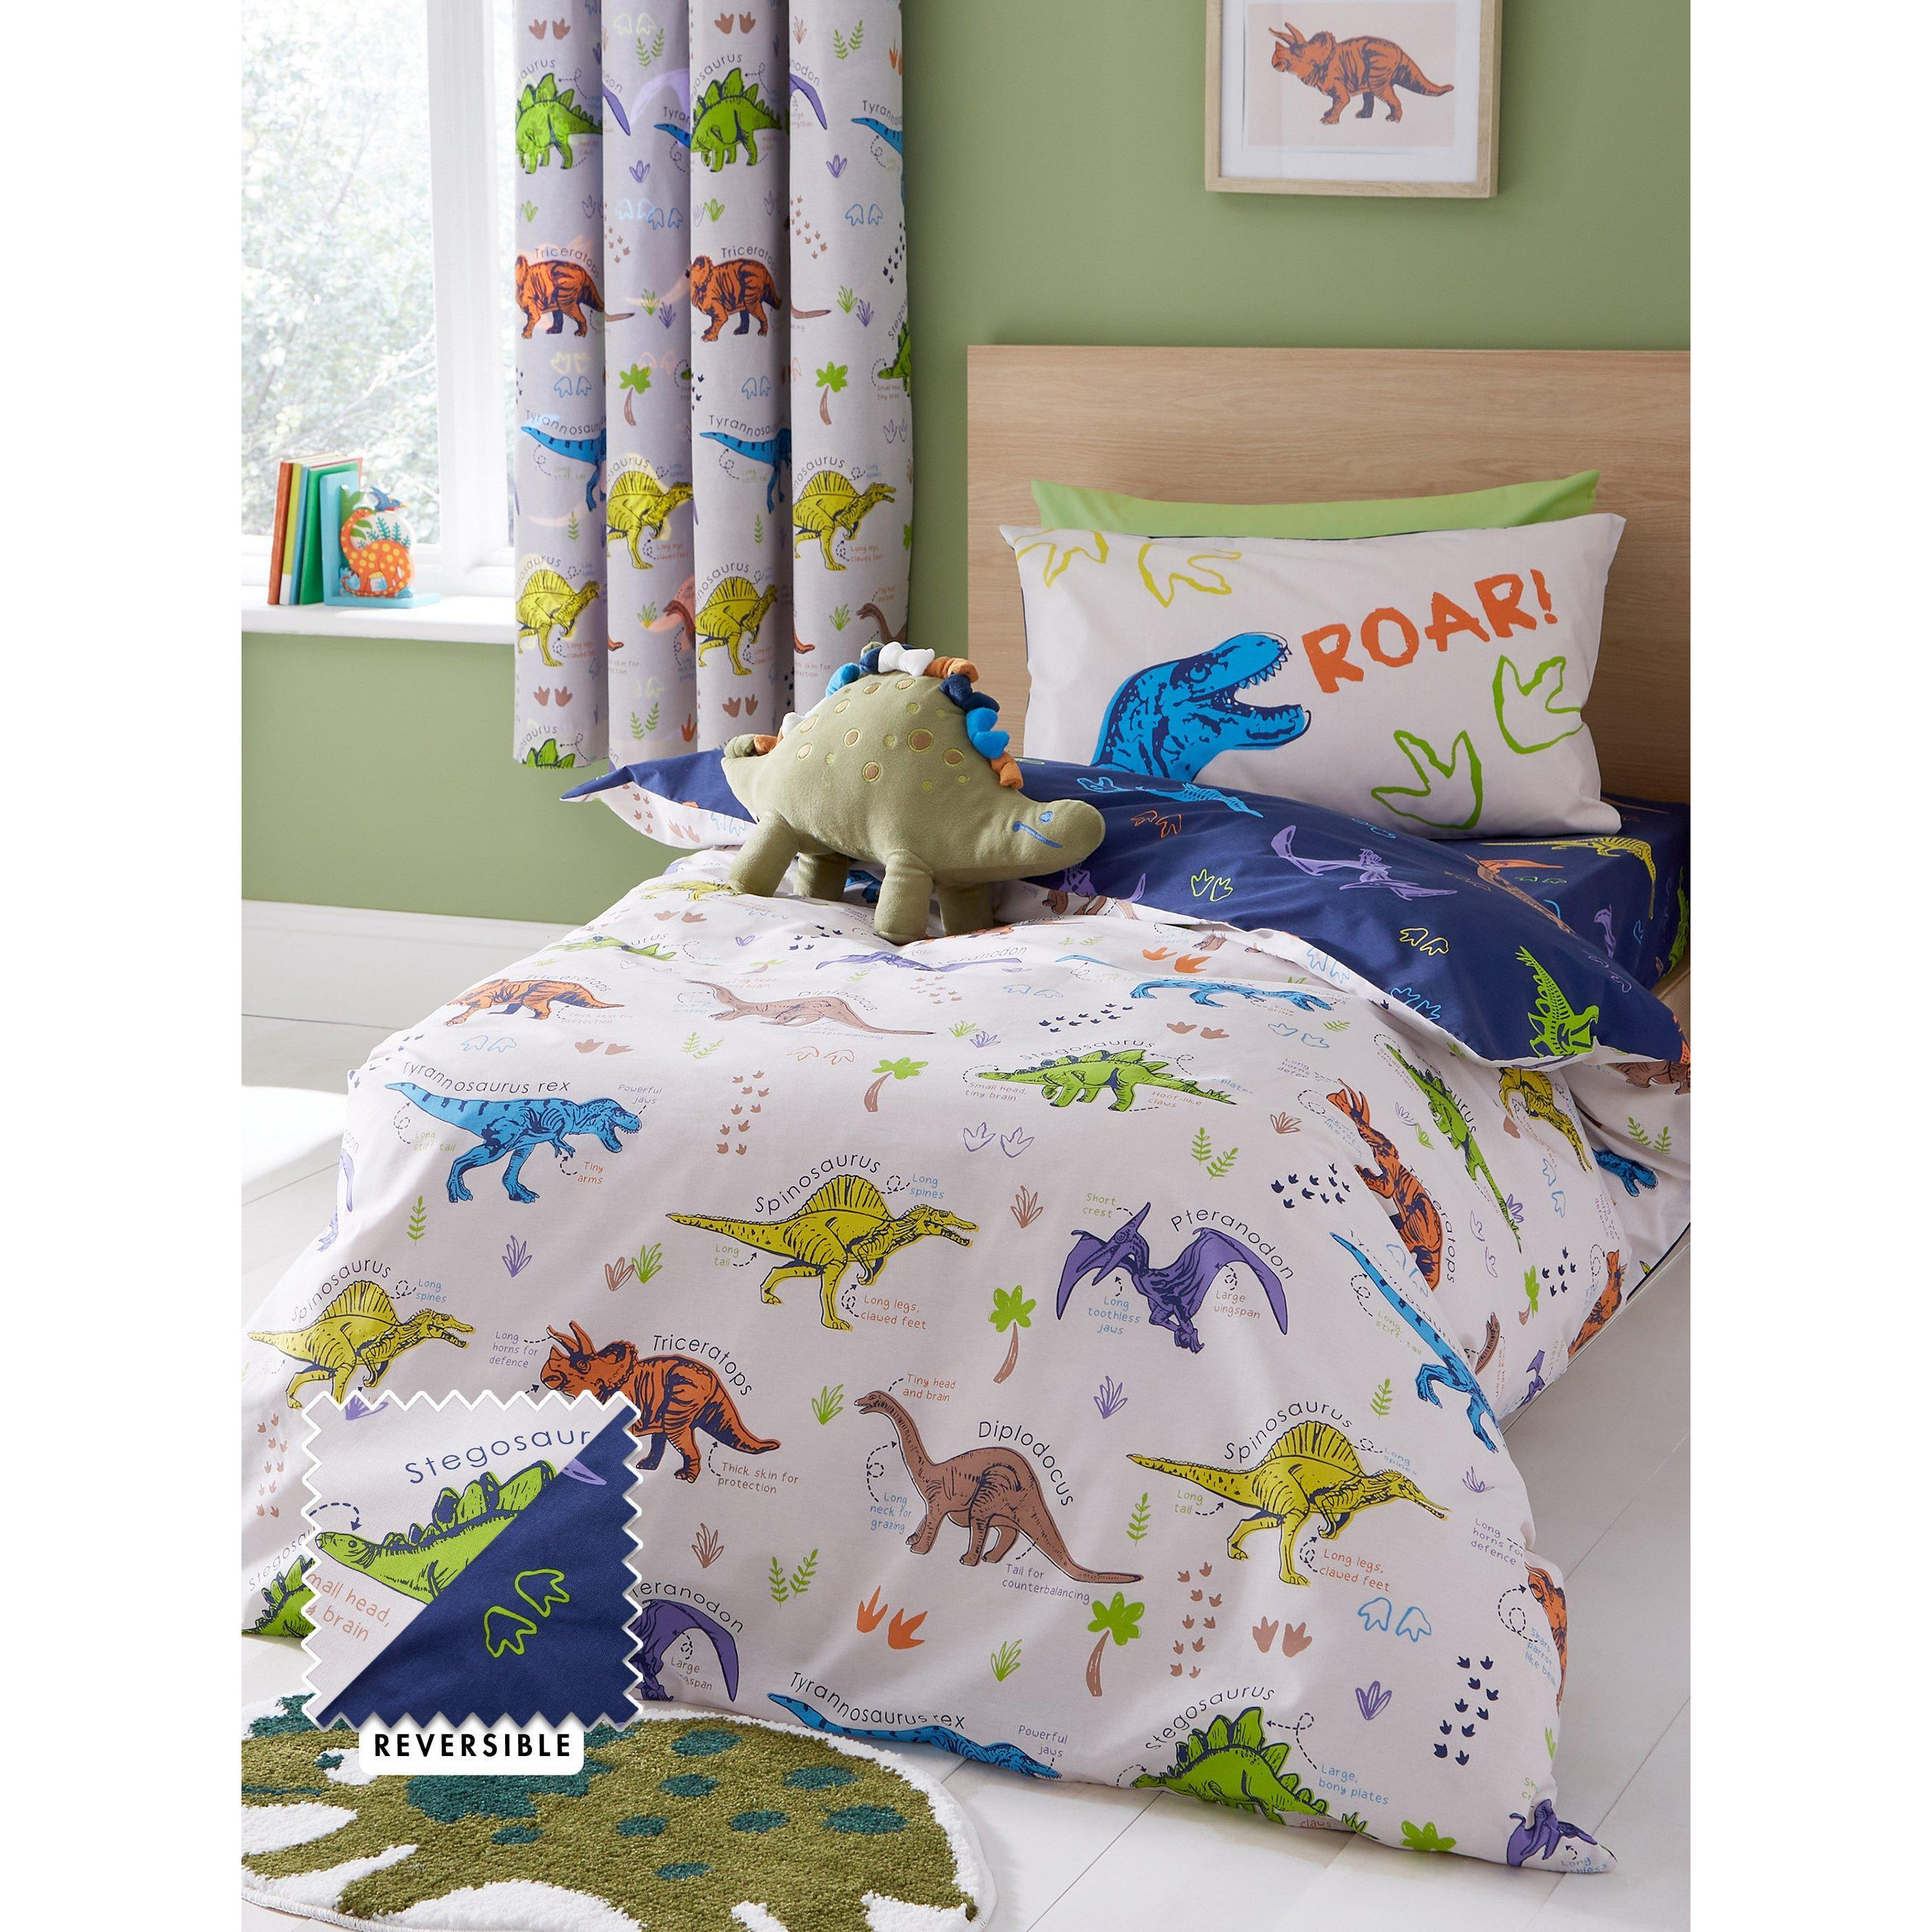 'Prehistoric Dinosaurs' Duvet Cover Set - image 1